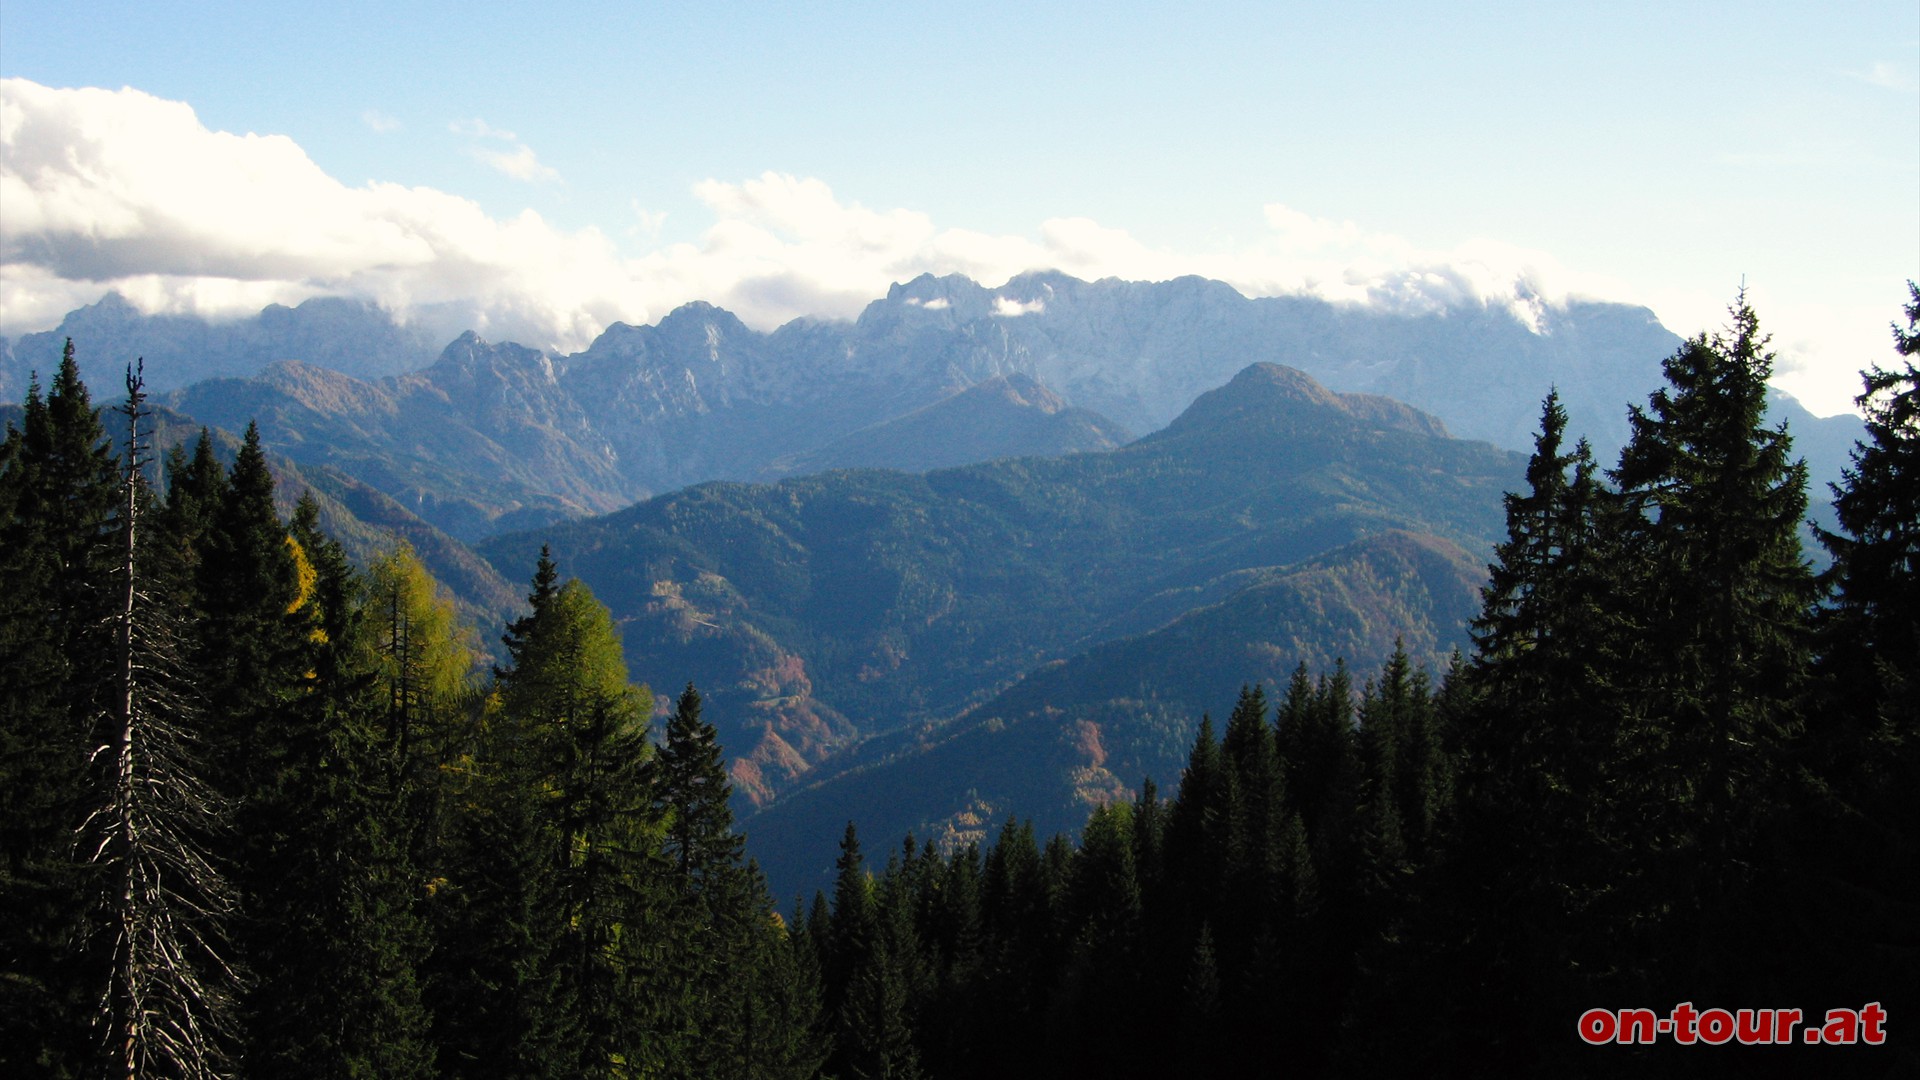 Schne Einblicke in die Steiner Alpen beim Abstieg.